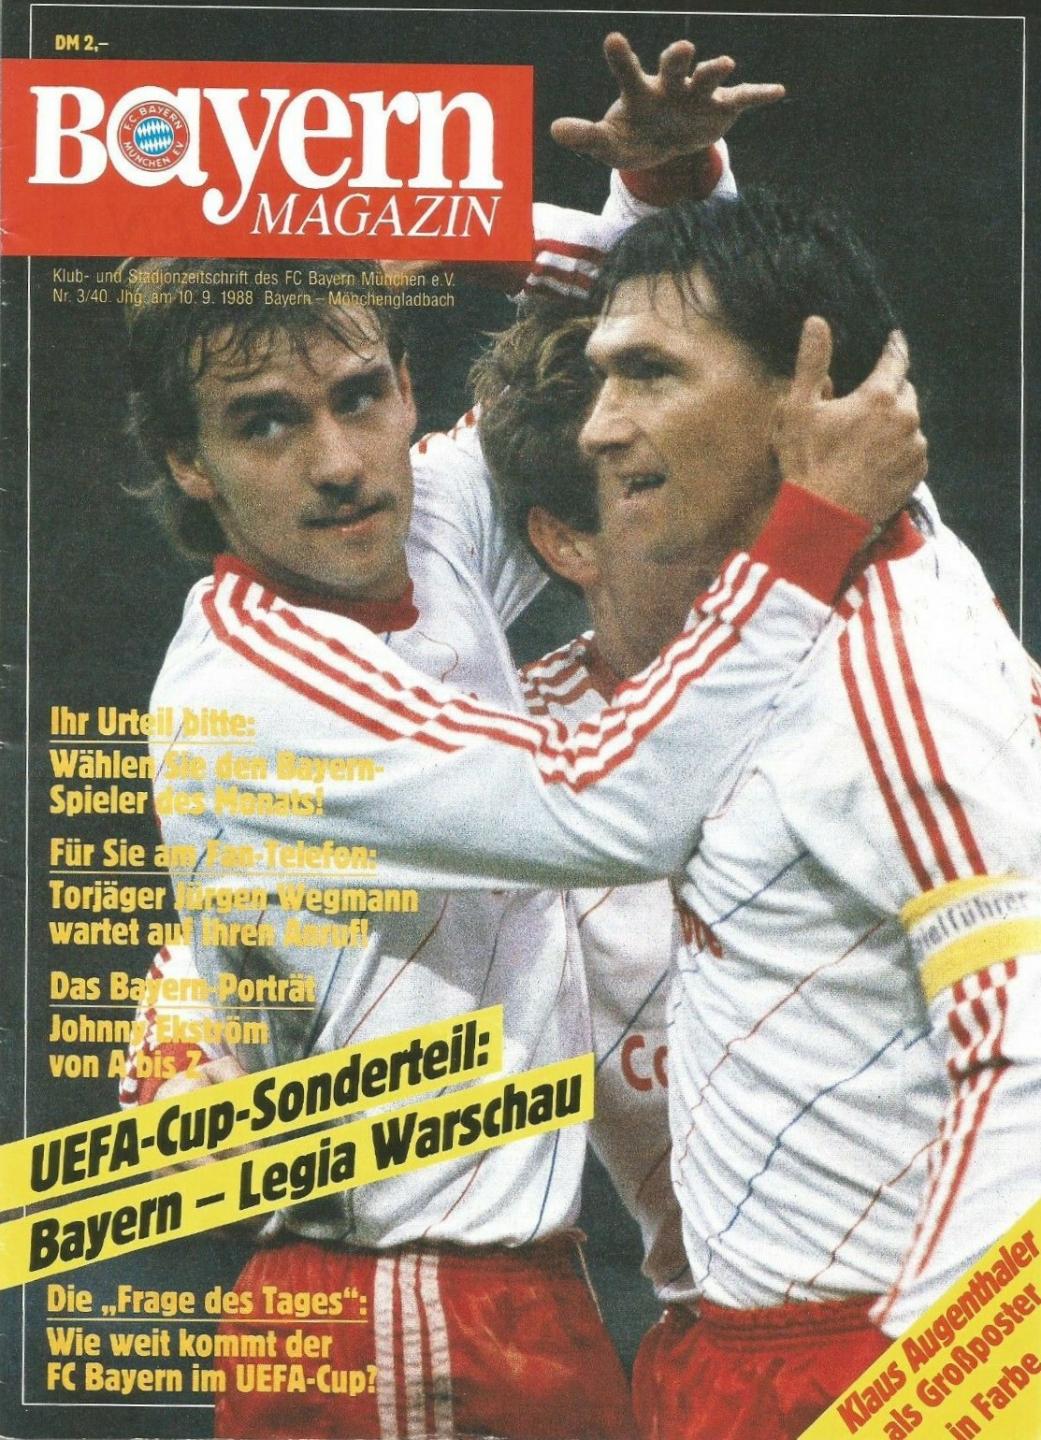 Program meczowy Bayern Monachium - Legia Warszawa 3:1 (07.09.1988).